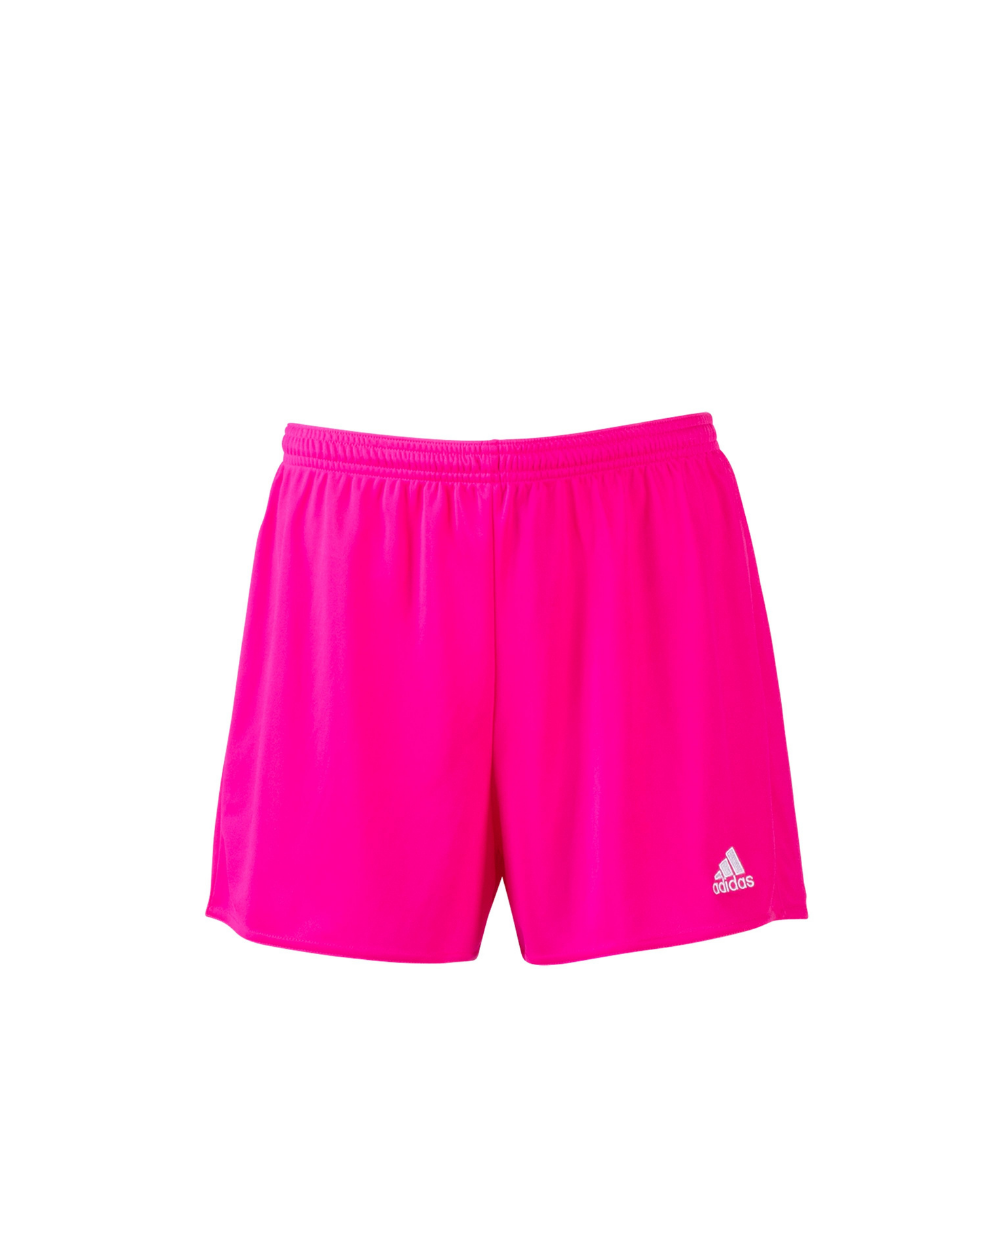 Riptide Neon Pink Women's Practice Shorts - Parma — Elite Soccer League